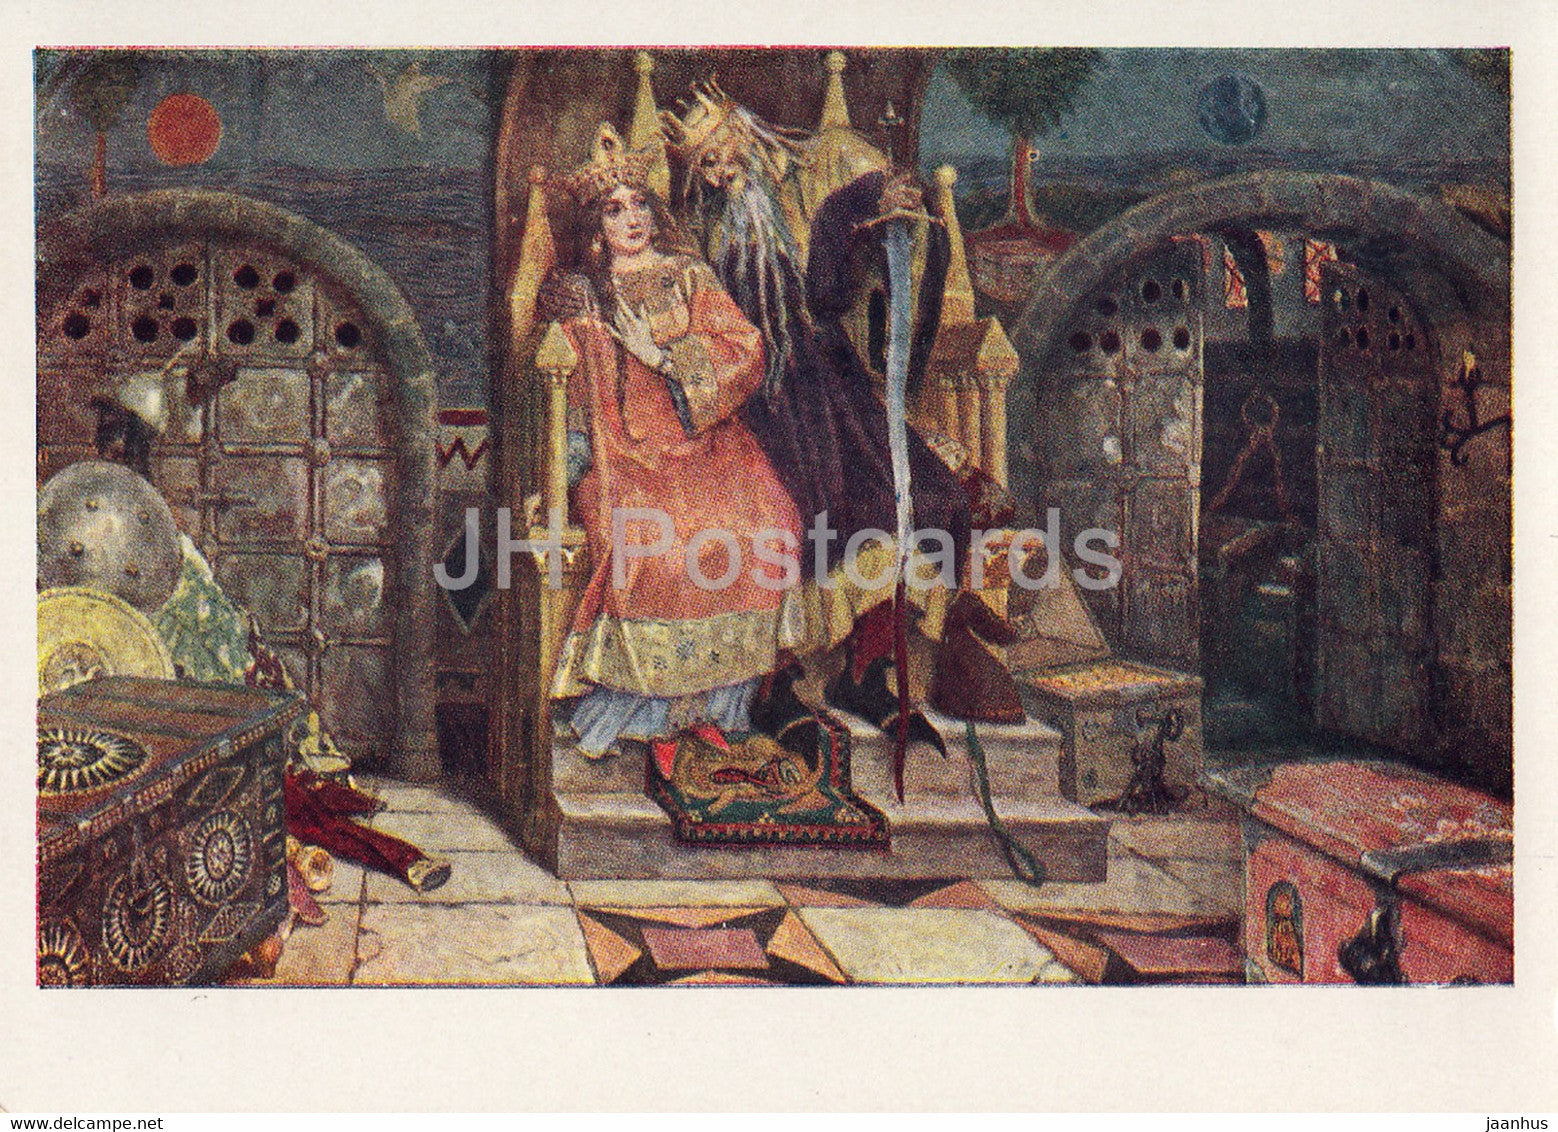 painting by V. Vasnetsov - Koschei the Deathless - Vasilisa - Fairy Tale - Russian art - 1963 - Russia USSR - unused - JH Postcards